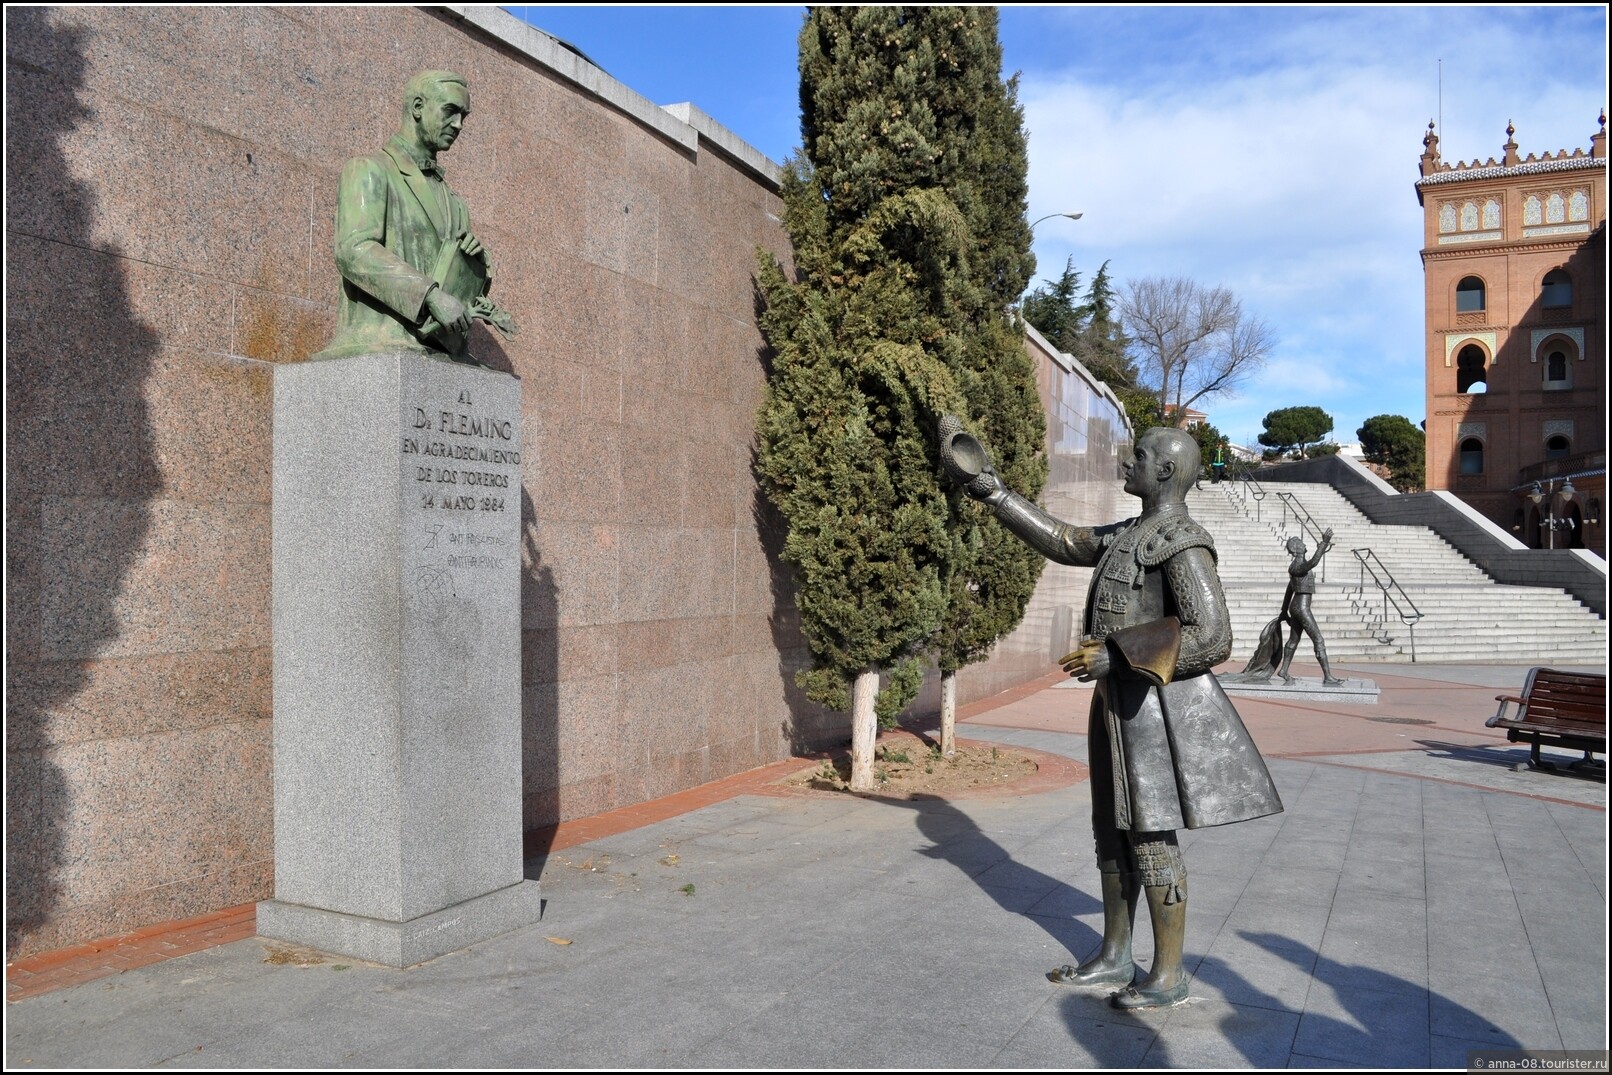 Памятник флемингу в мадриде